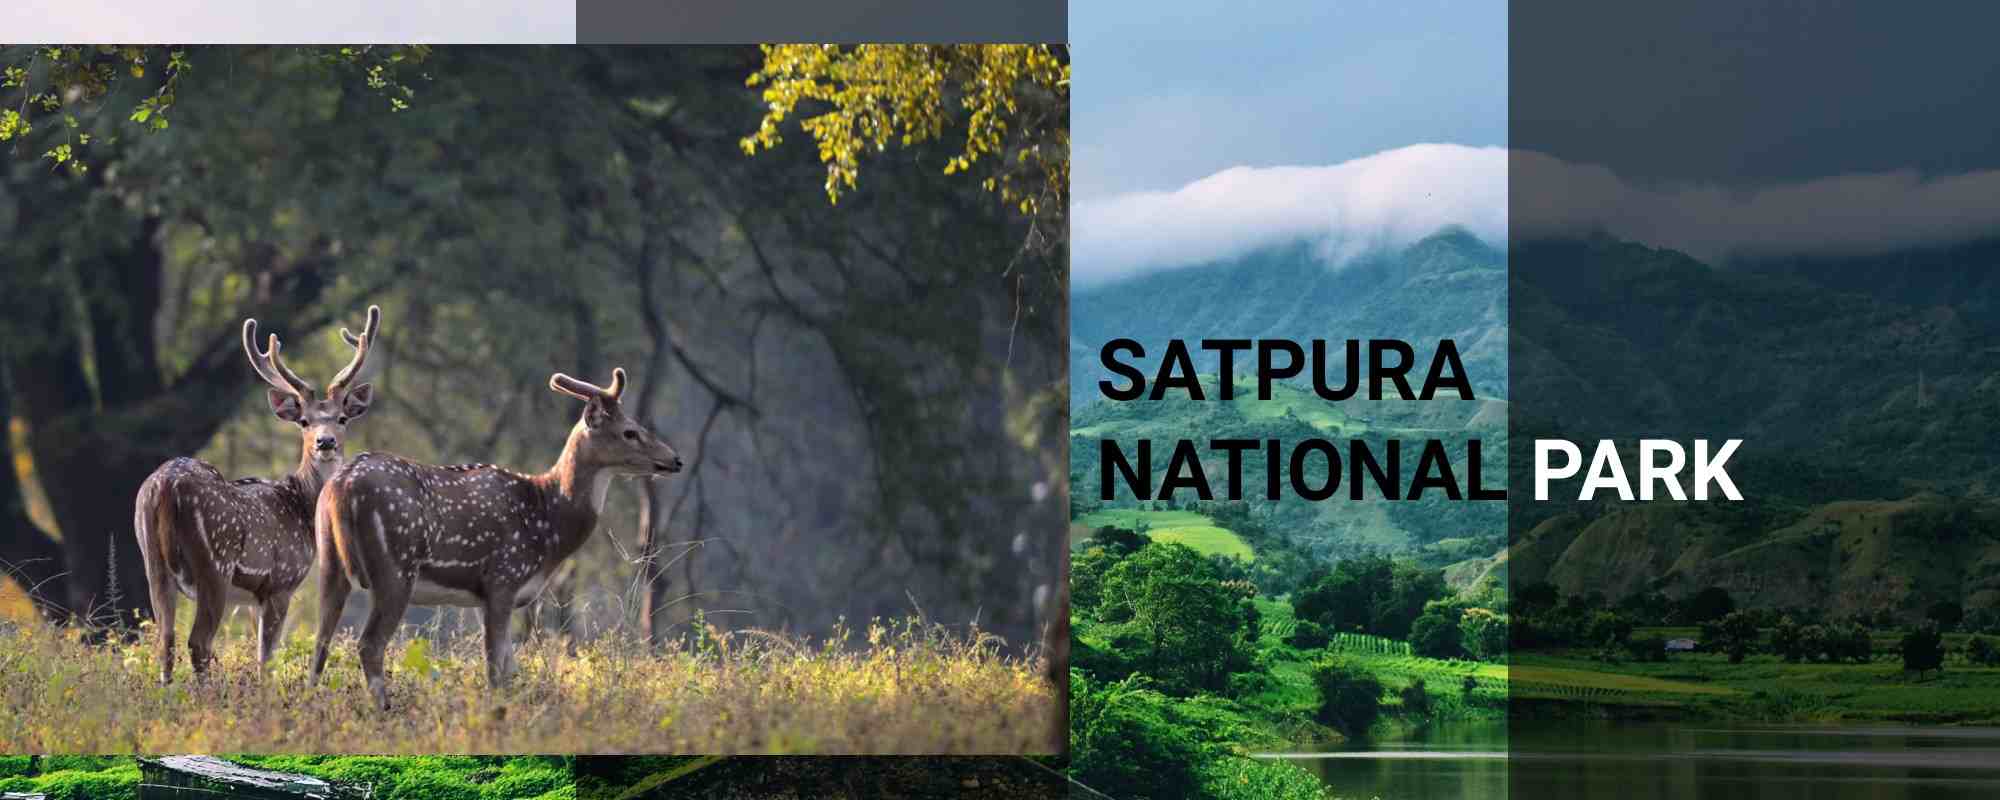 Satpura National Park